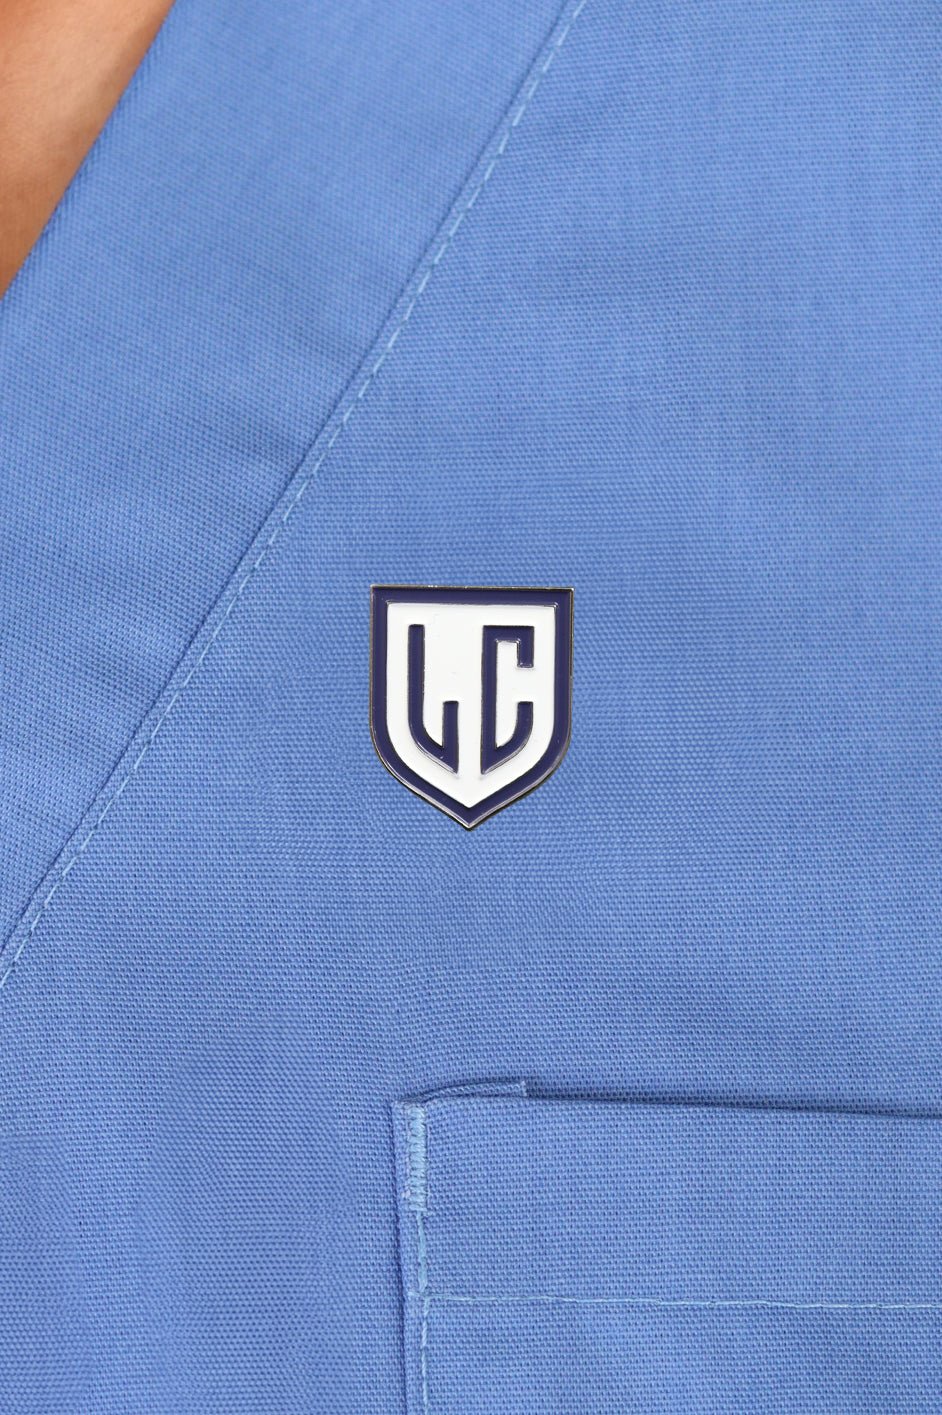 Liwa College logo Pin